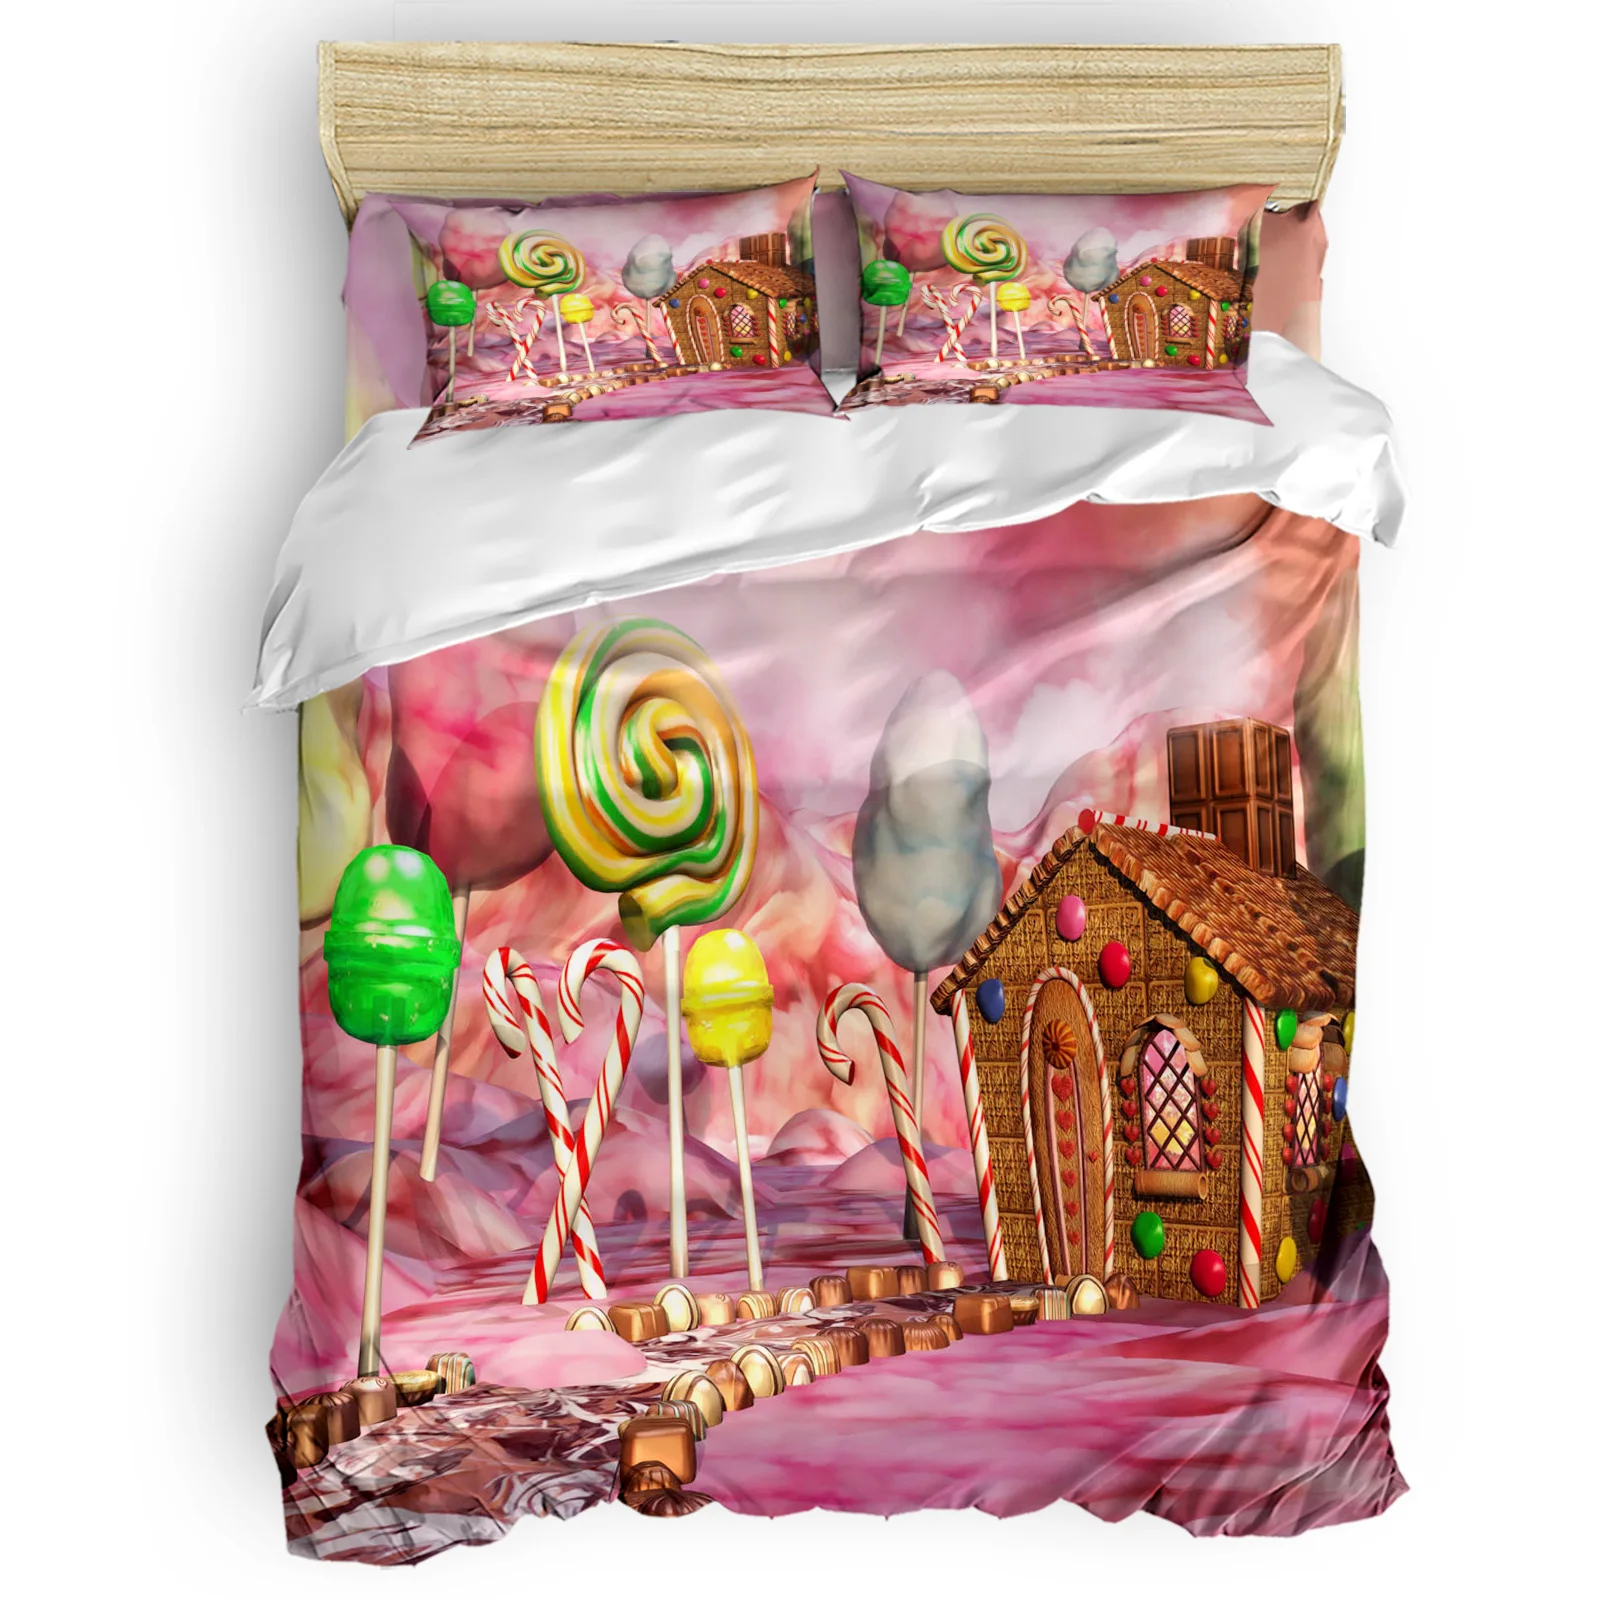 

Lollipop Candy House Fantasy закуска десерт геометрический комплект пододеяльников простыня наволочка спальный комплект постельного белья